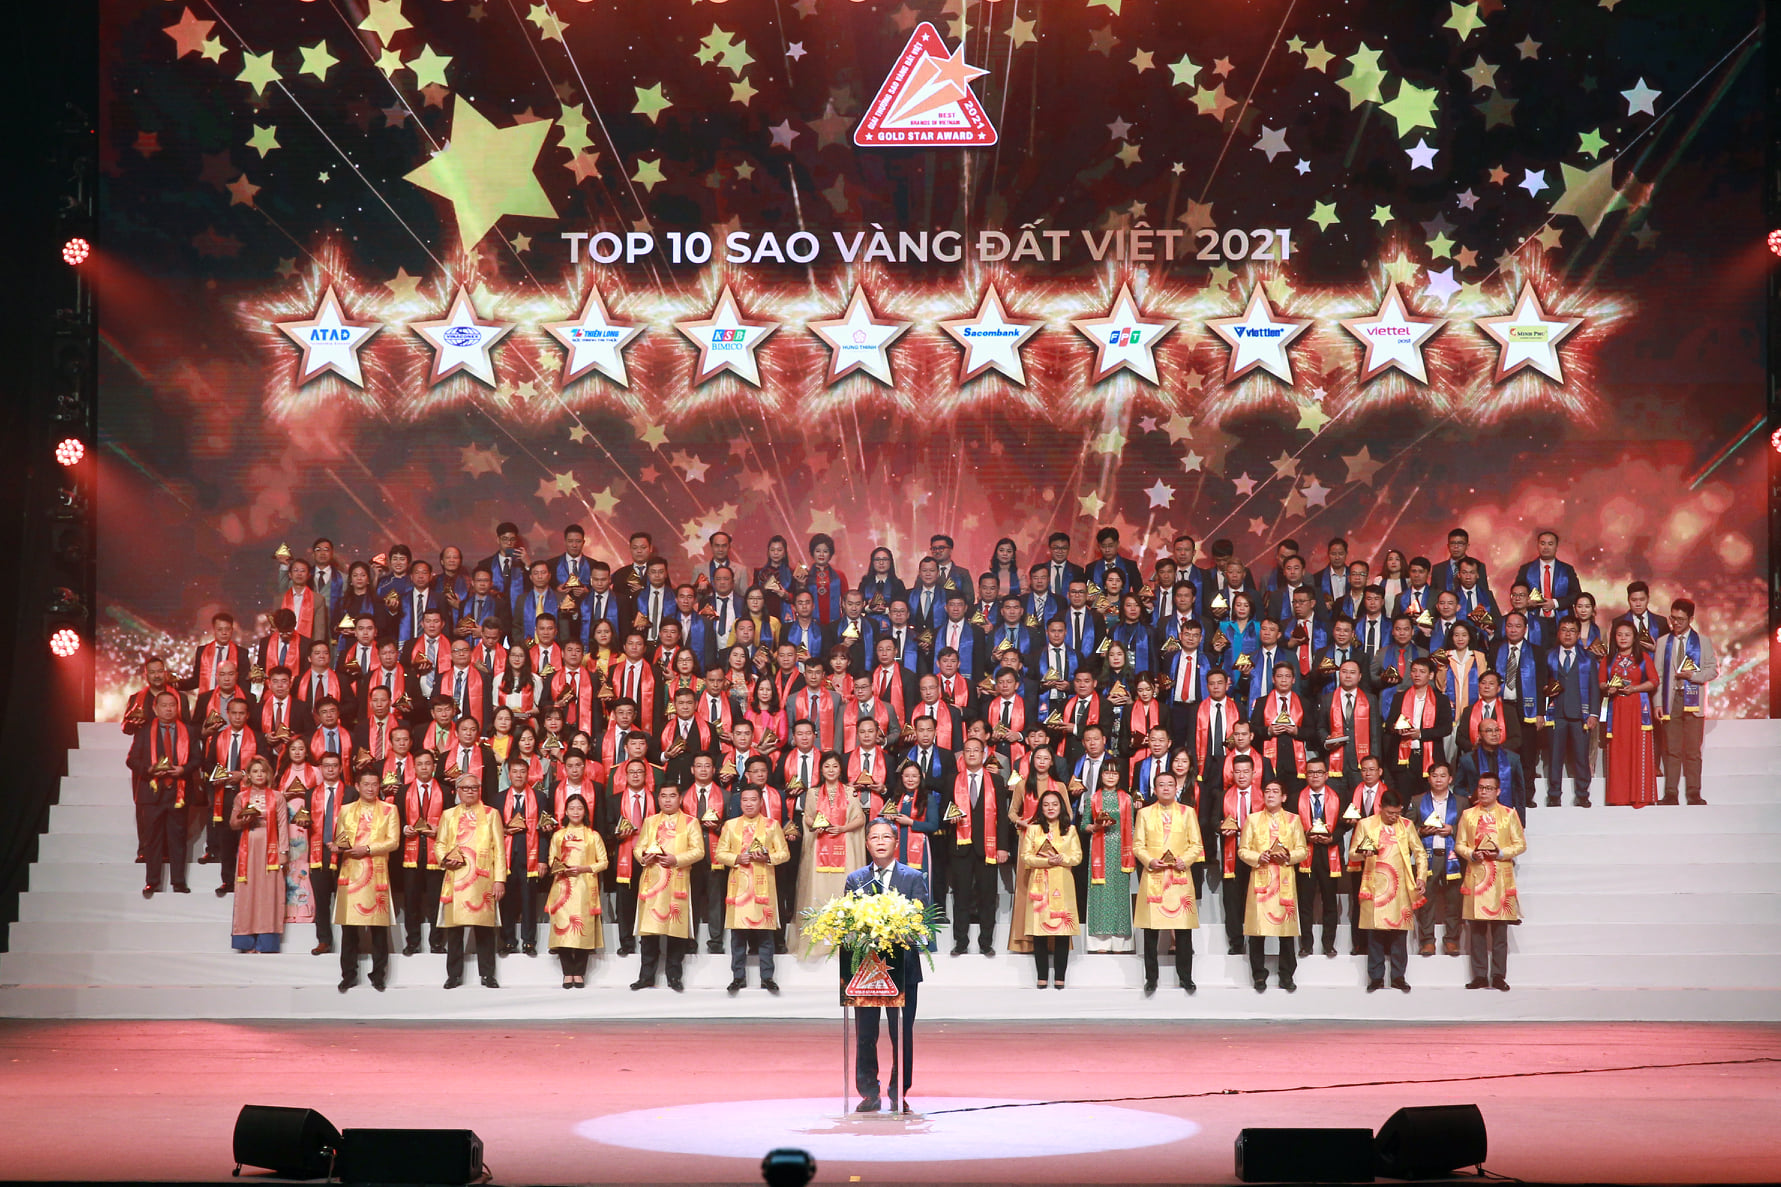 Tối 30-3, tại Hà Nội, Trung ương Hội doanh nhân trẻ Việt Nam tổ chức Lễ trao Giải thưởng Sao Vàng đất Việt 2021 để tôn vinh Top 10, Top 100, Top 200 thương hiệu Việt Nam tiêu biểu. 